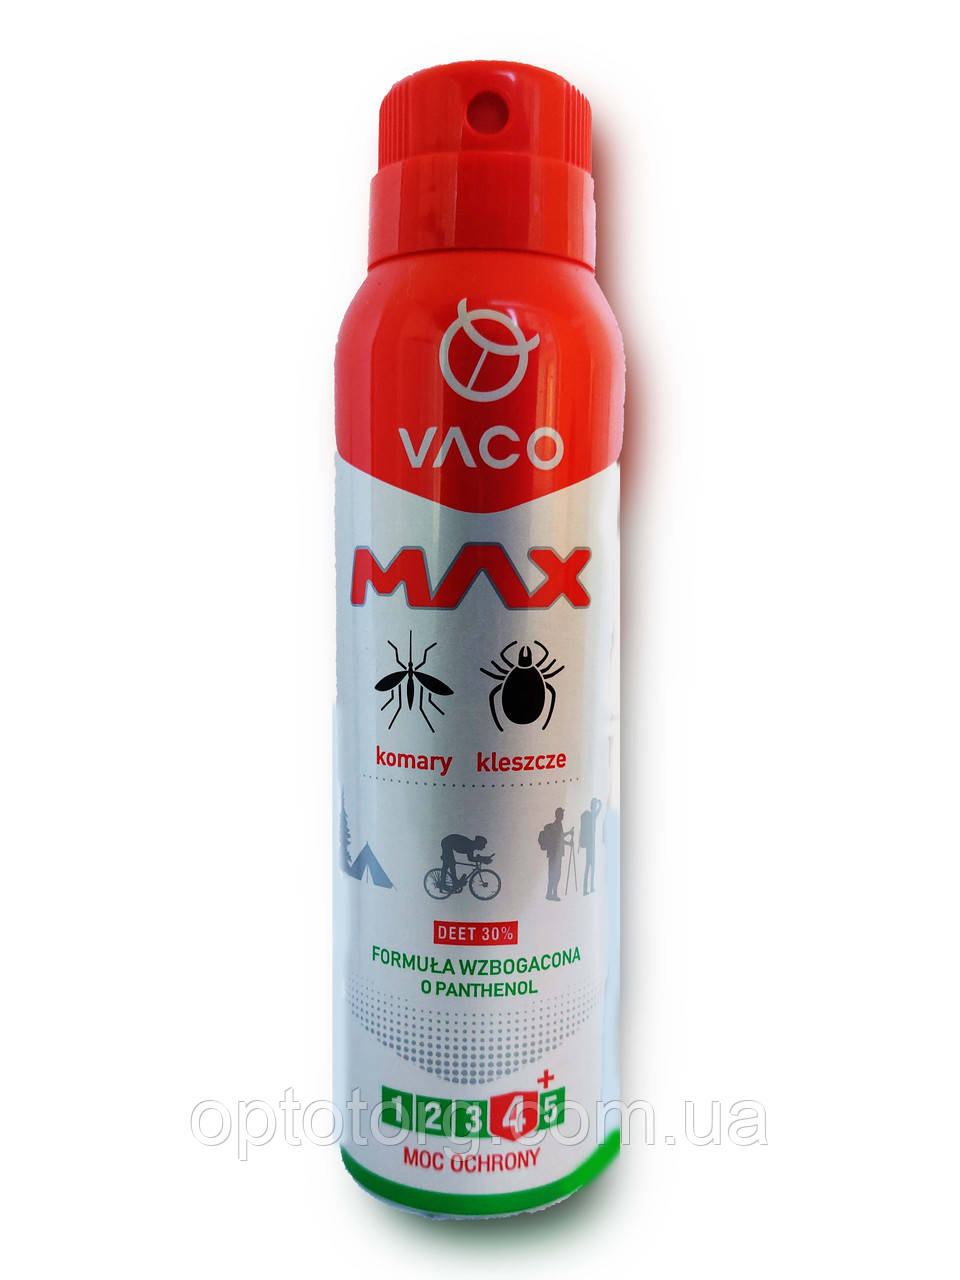 VACO SPRAY MAX аерозоль від комарів, кліщів, мошок з пантенолом (ДЕТА 30%) Польща